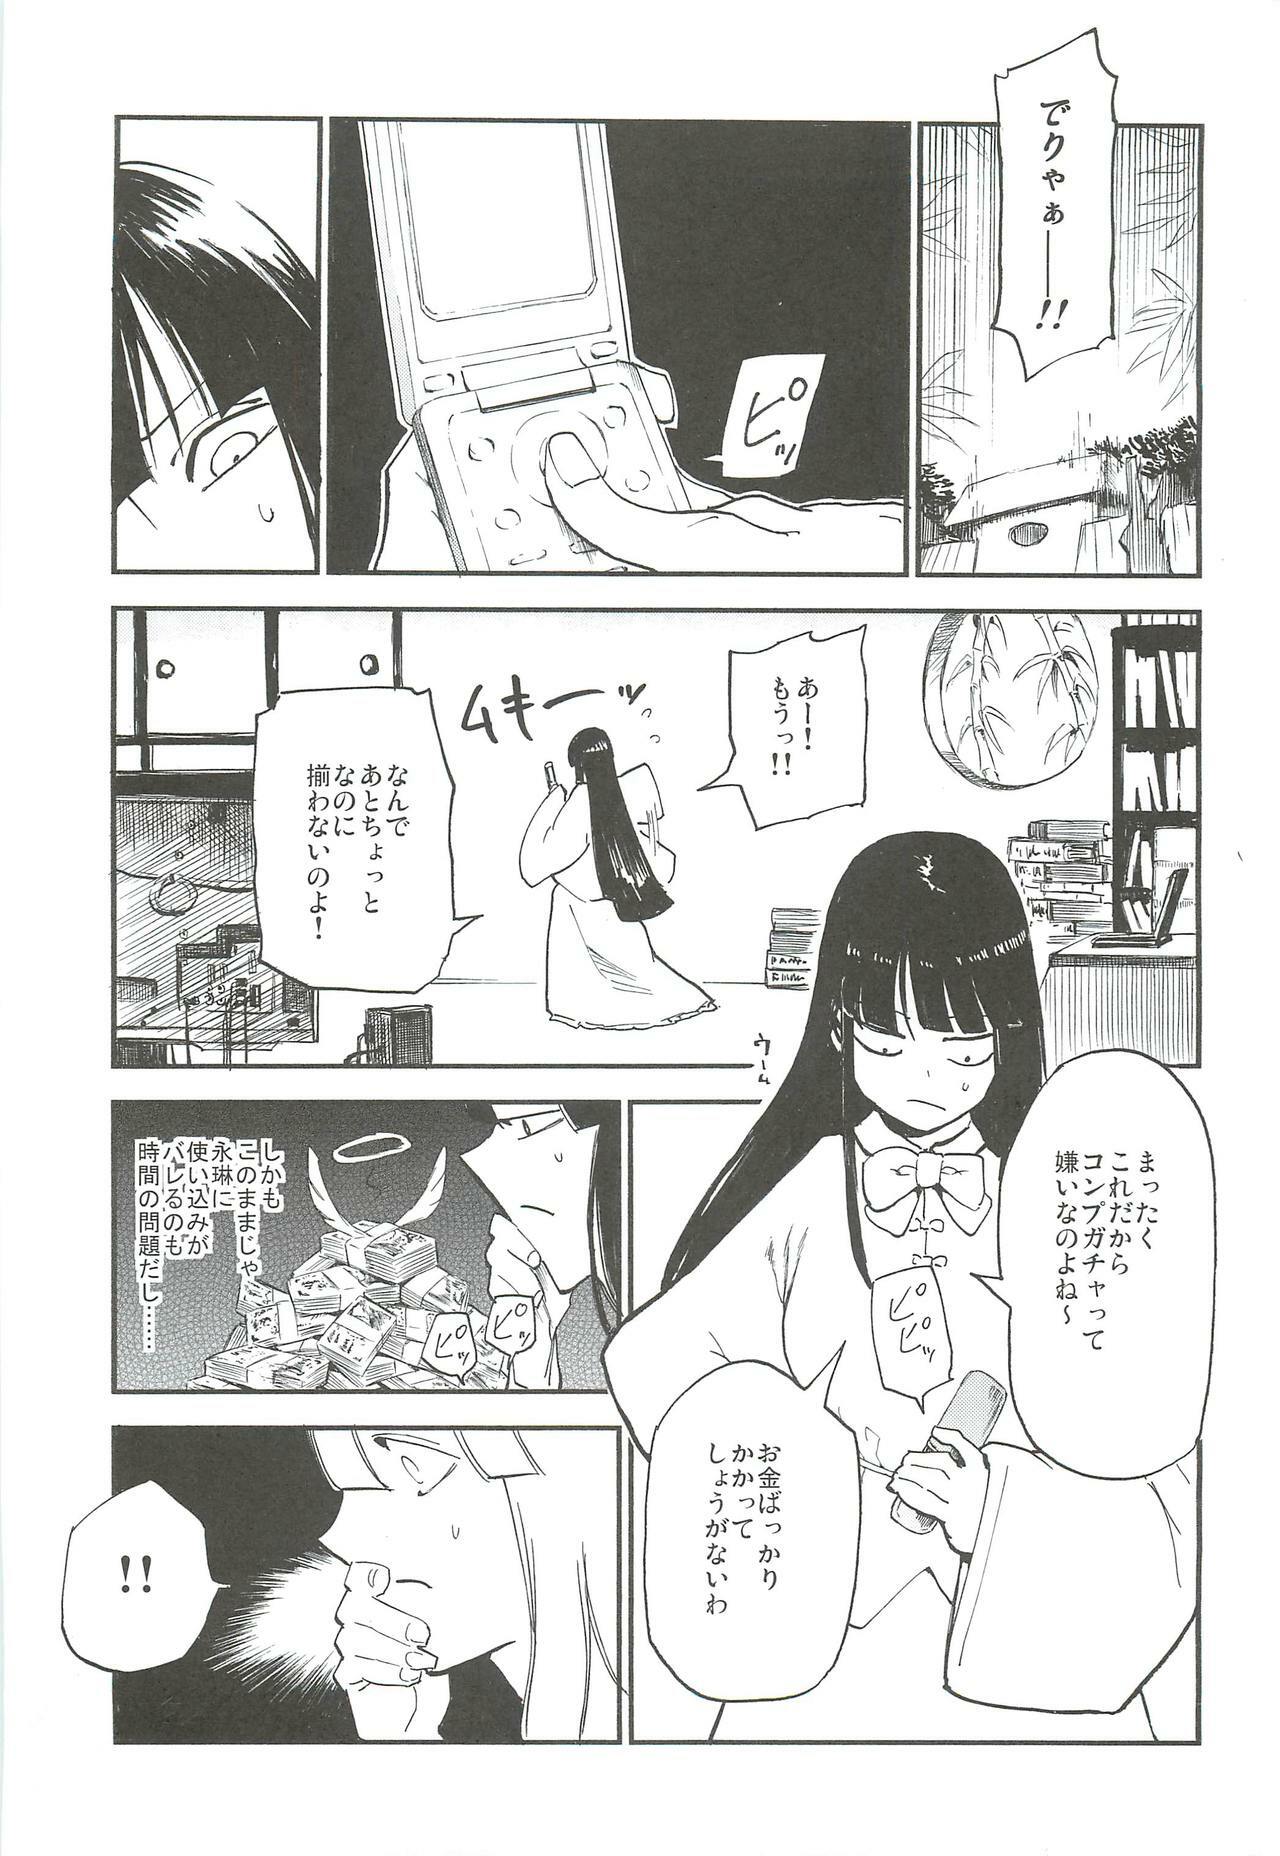 (Reitaisai 9) [Shironegiya (miya9)] -udongein- (Touhou Project) page 2 full